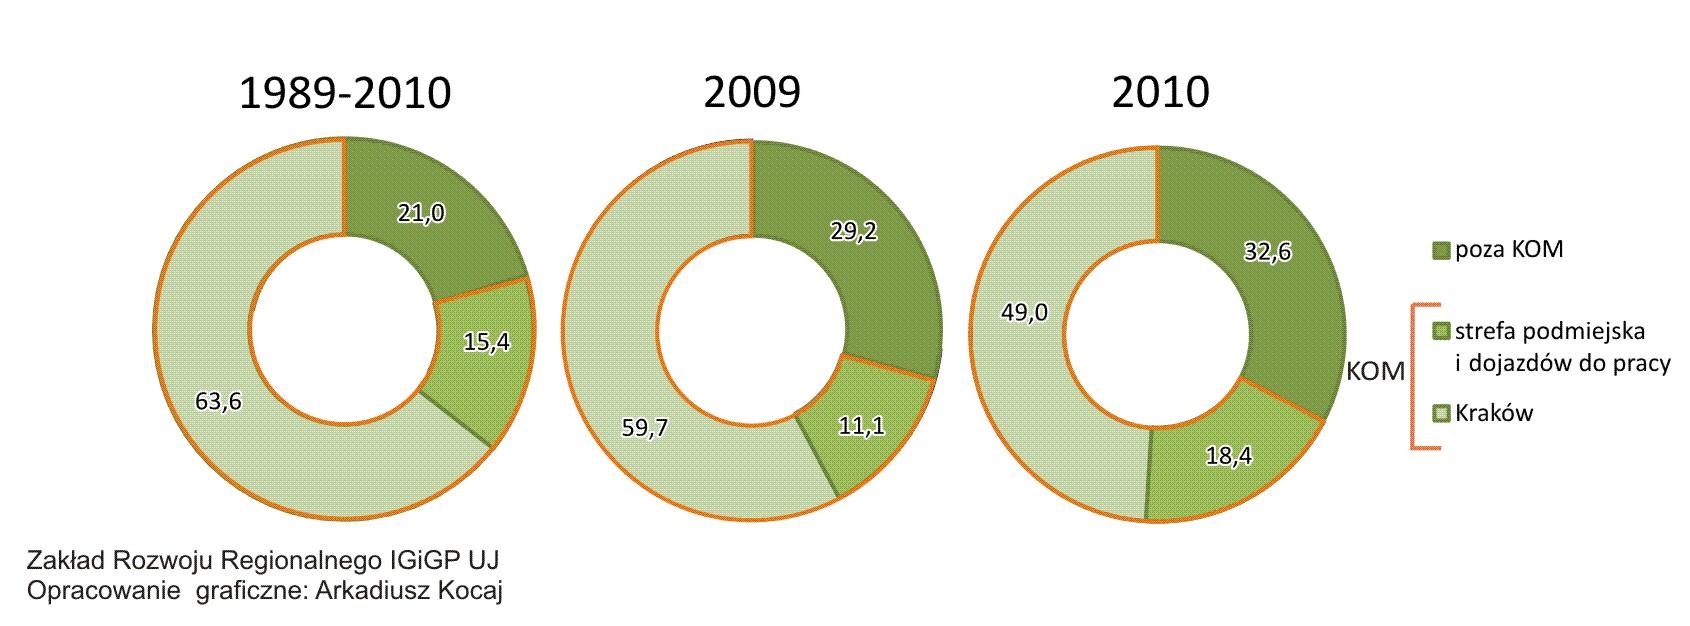 greenfield do ludności 2000 r. 50,7 44,1 2005 r 46,3 41,1 2010 r.